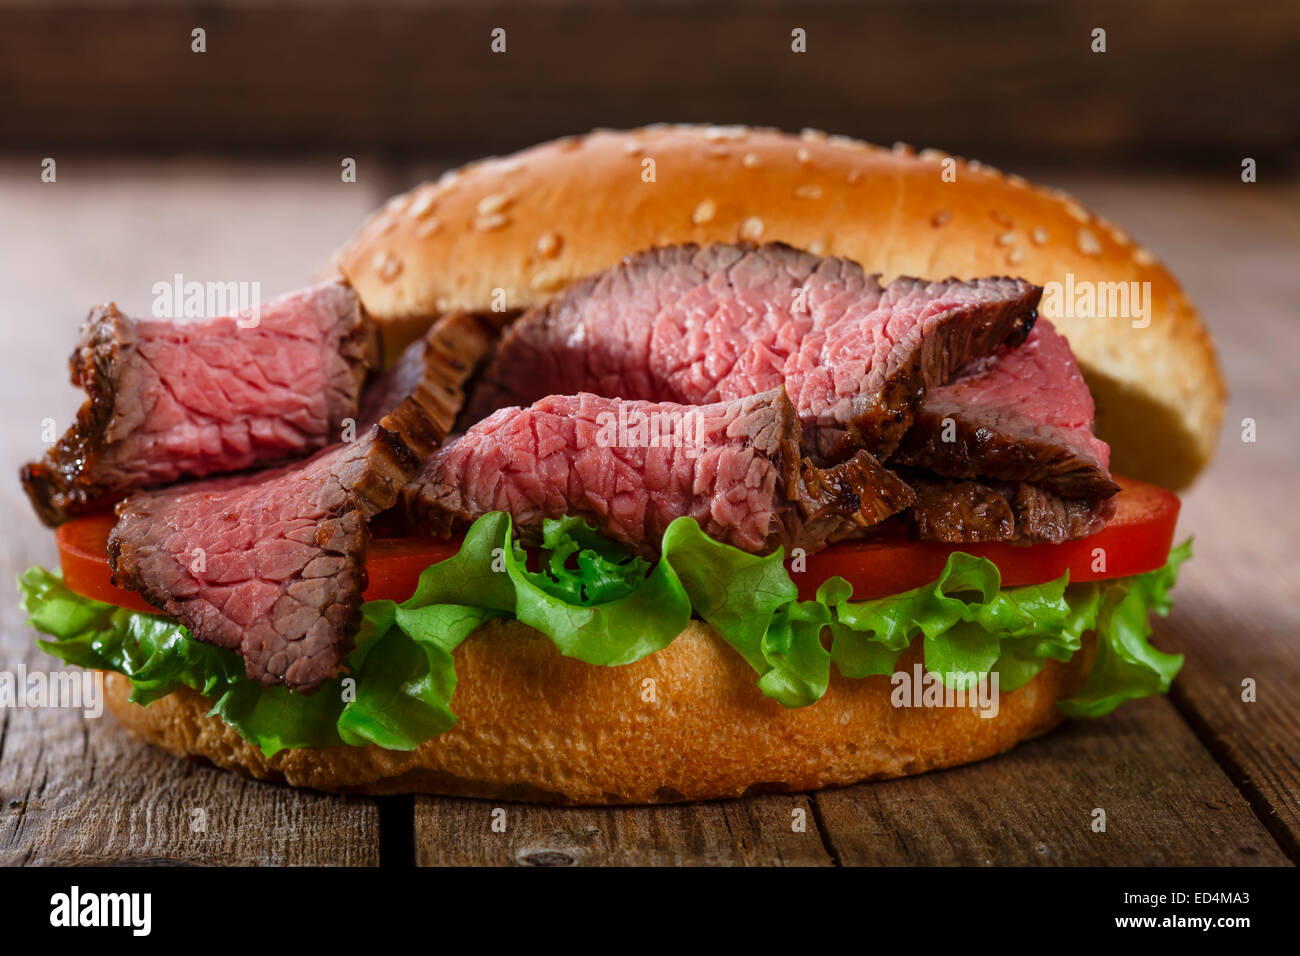 roast beef hamburger sandwich on a wooden surface Stock Photo